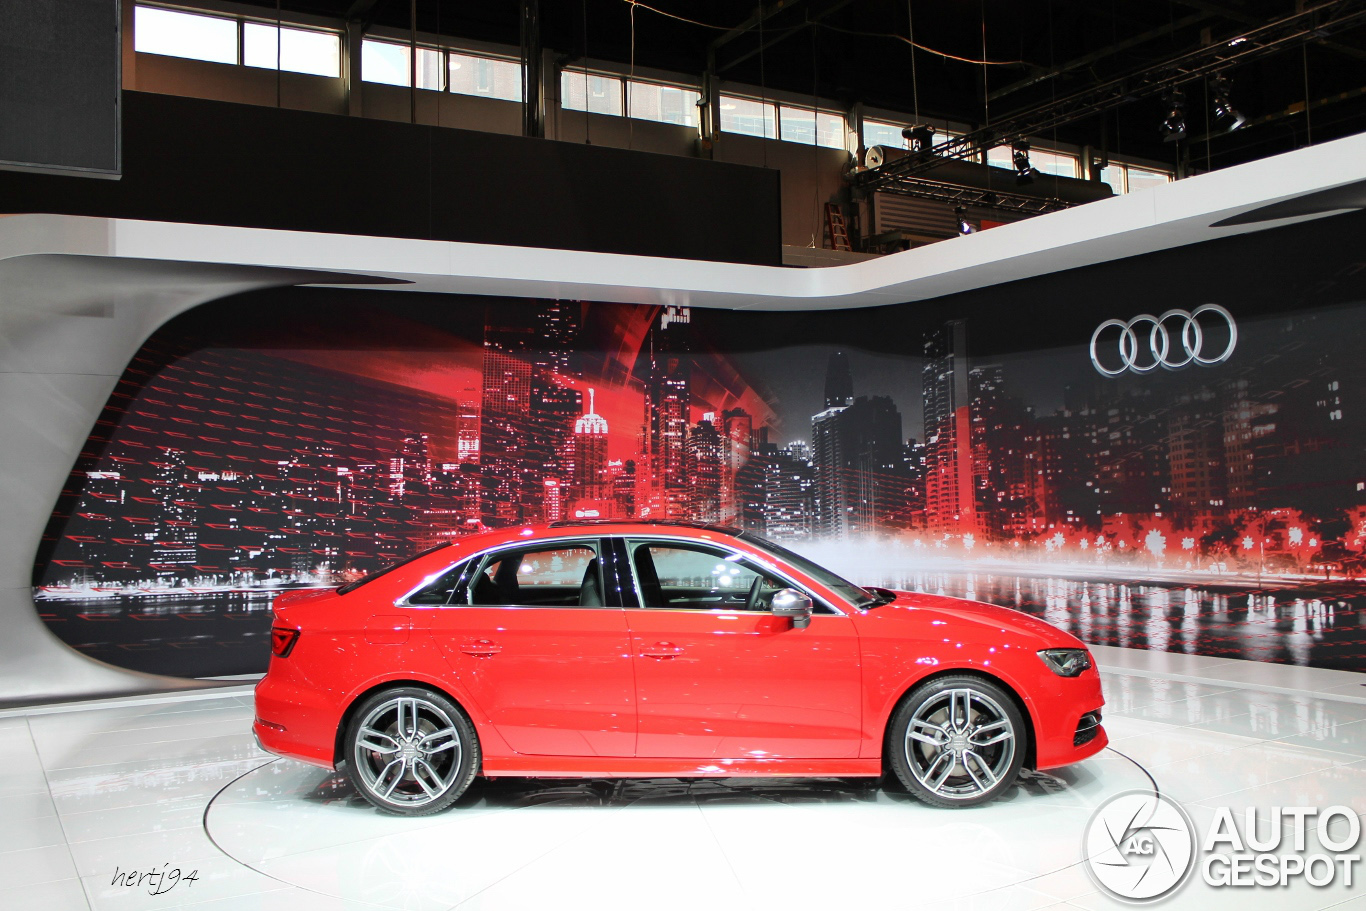 Harga Mobil Audi S3 Terbaru Dan Spesifikasinya Oto Sport